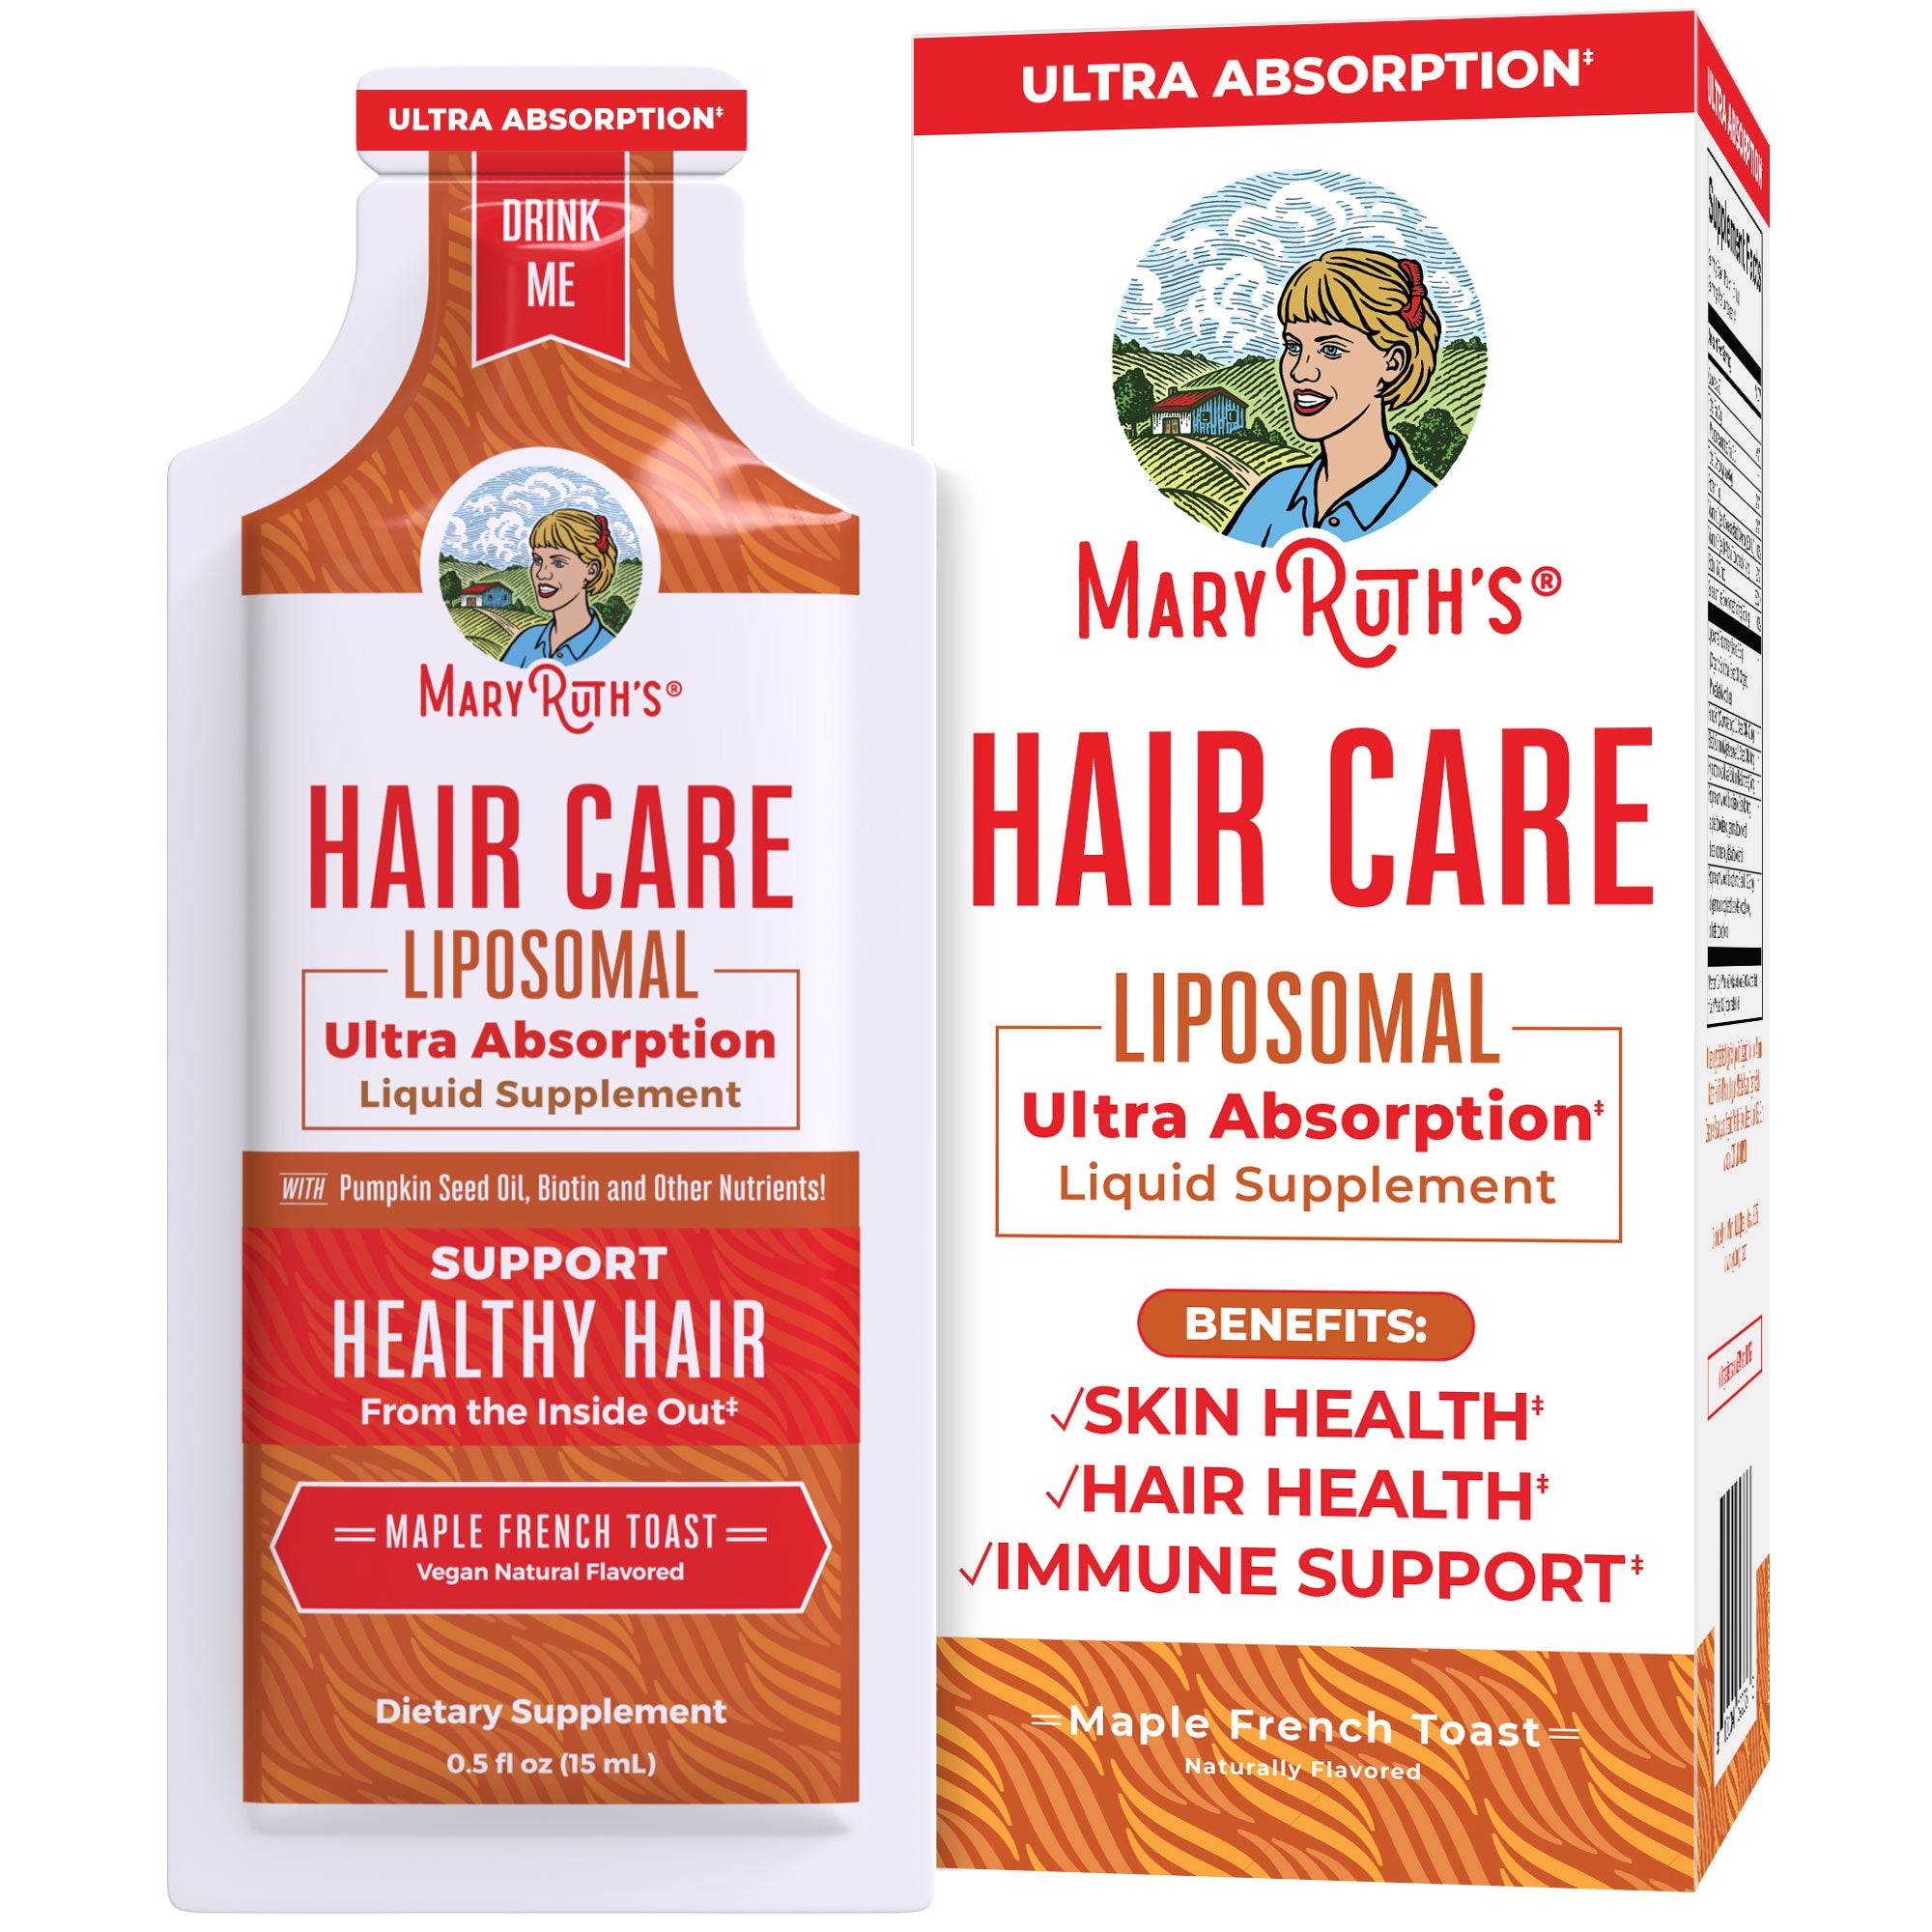 Hair Care Liposomal